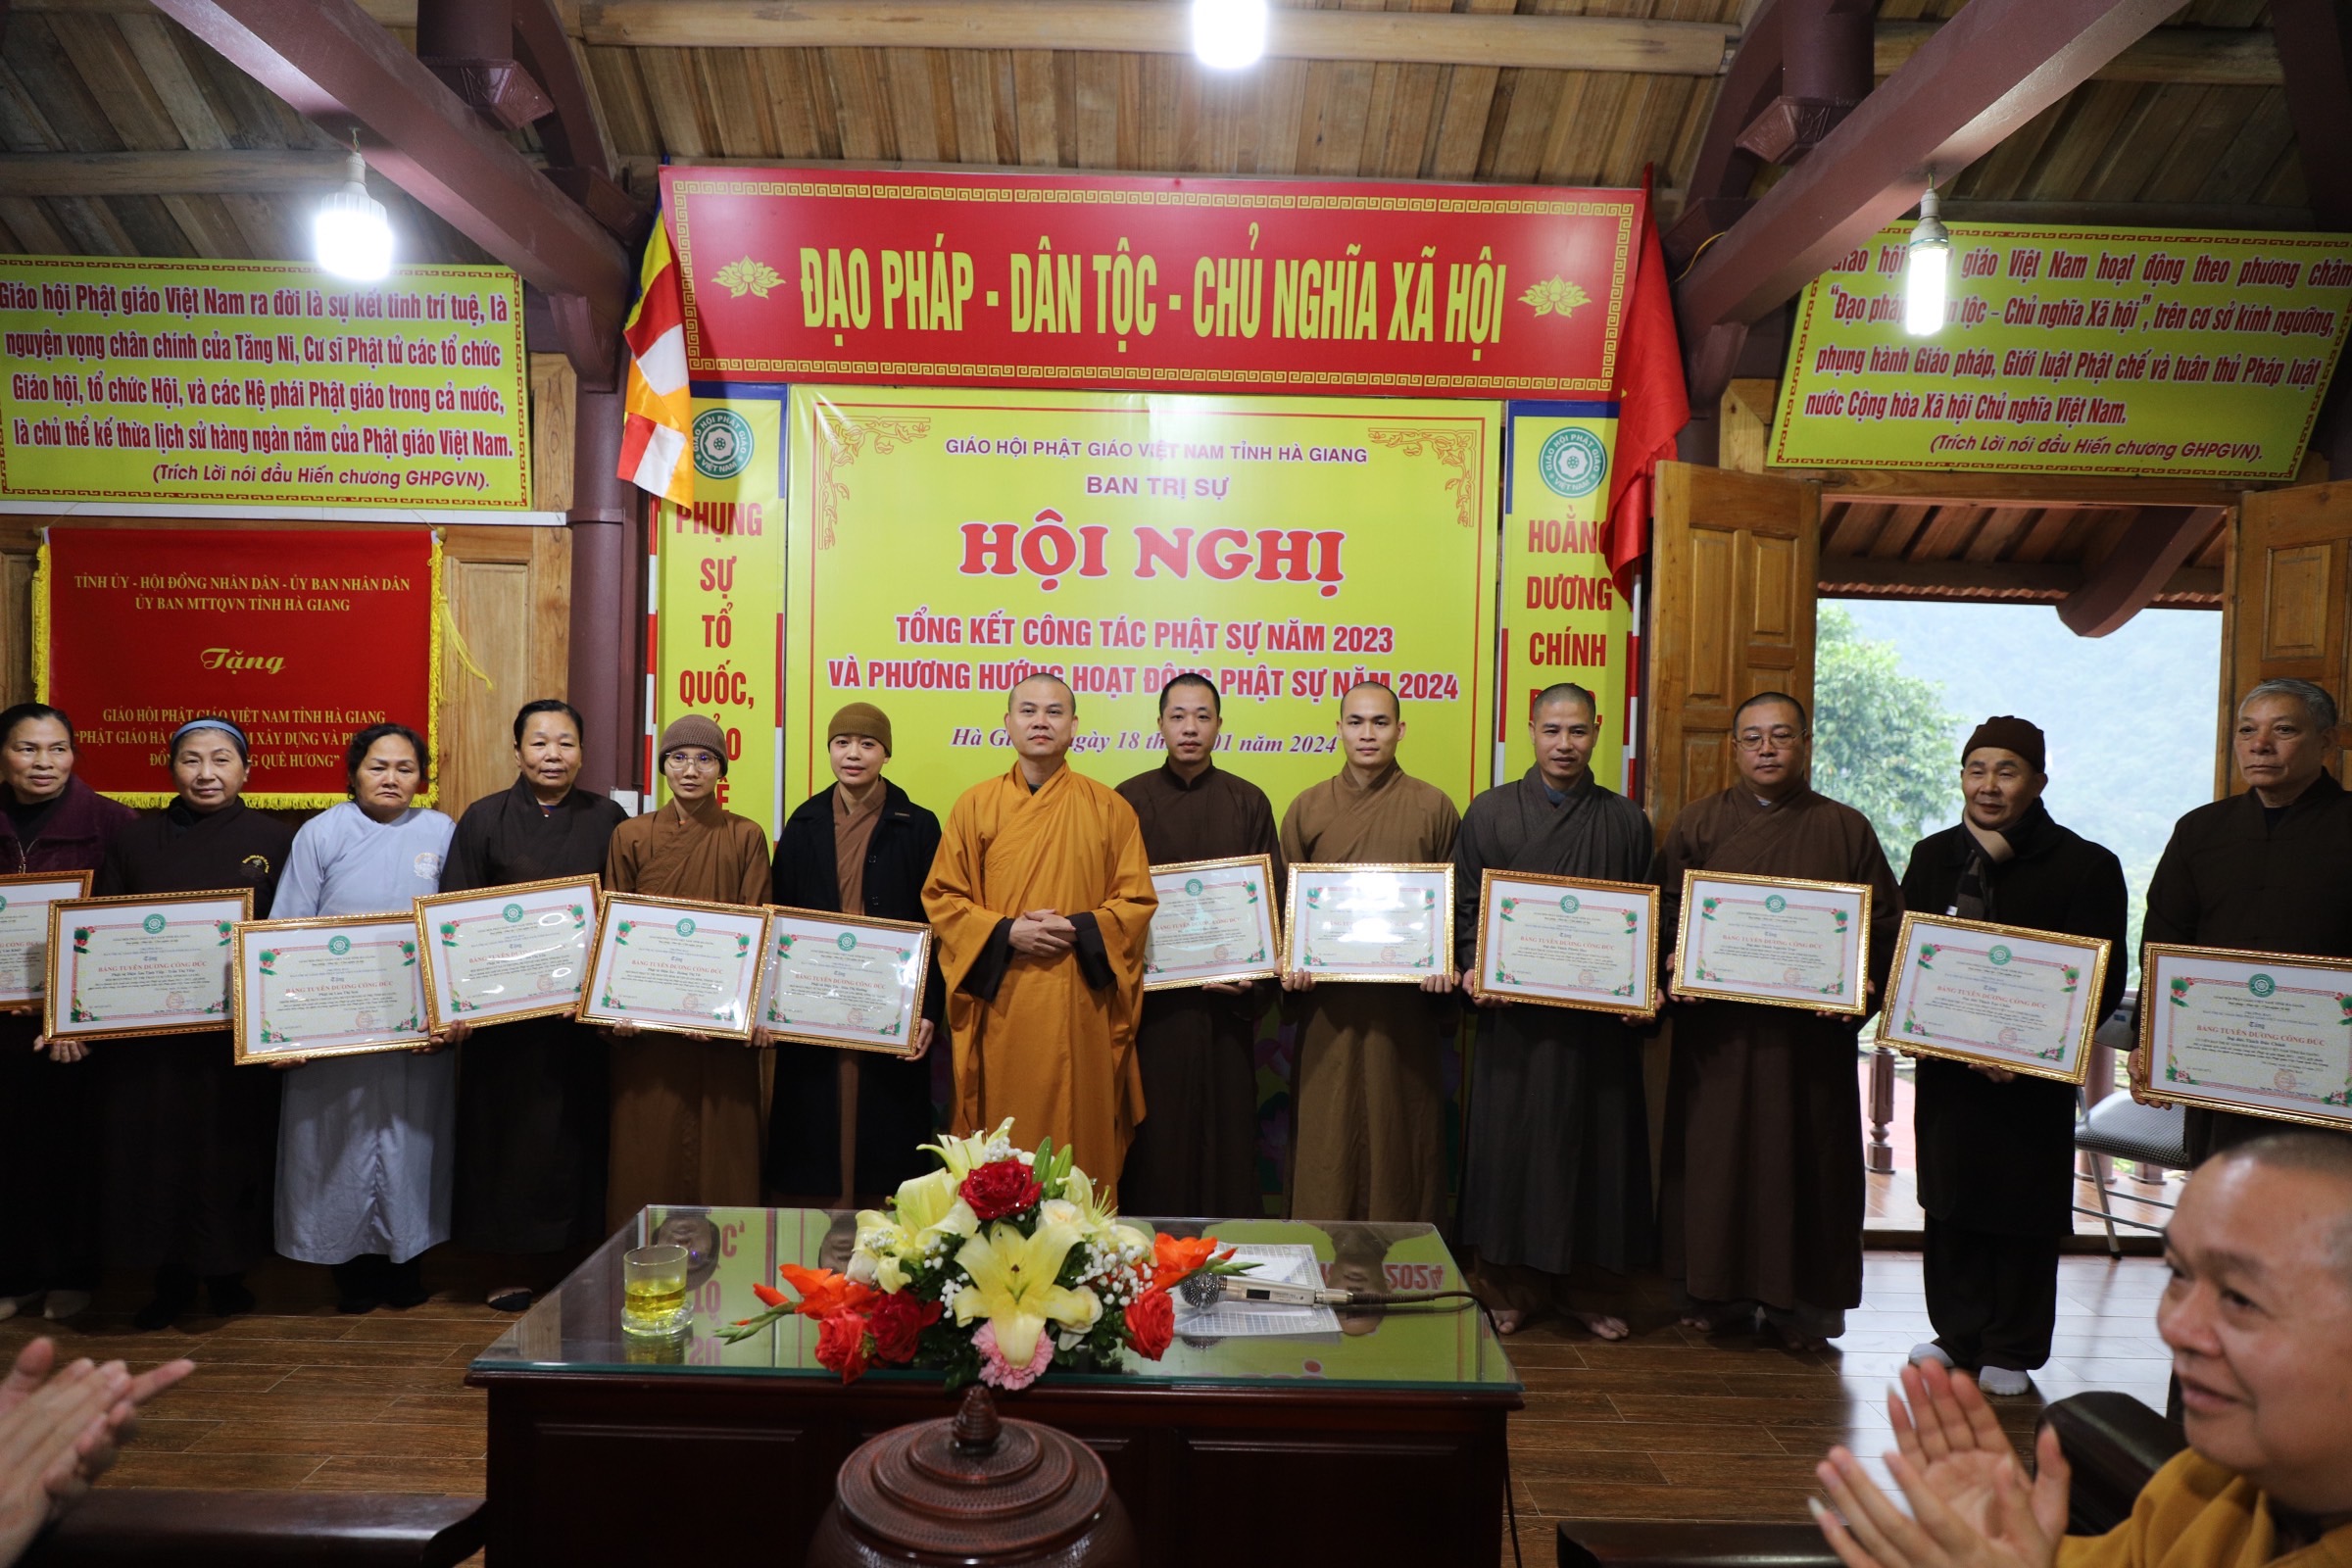 Phật giáo Hà Giang tổng kết – triển khai công tác Phật sự năm 2023 – 2024